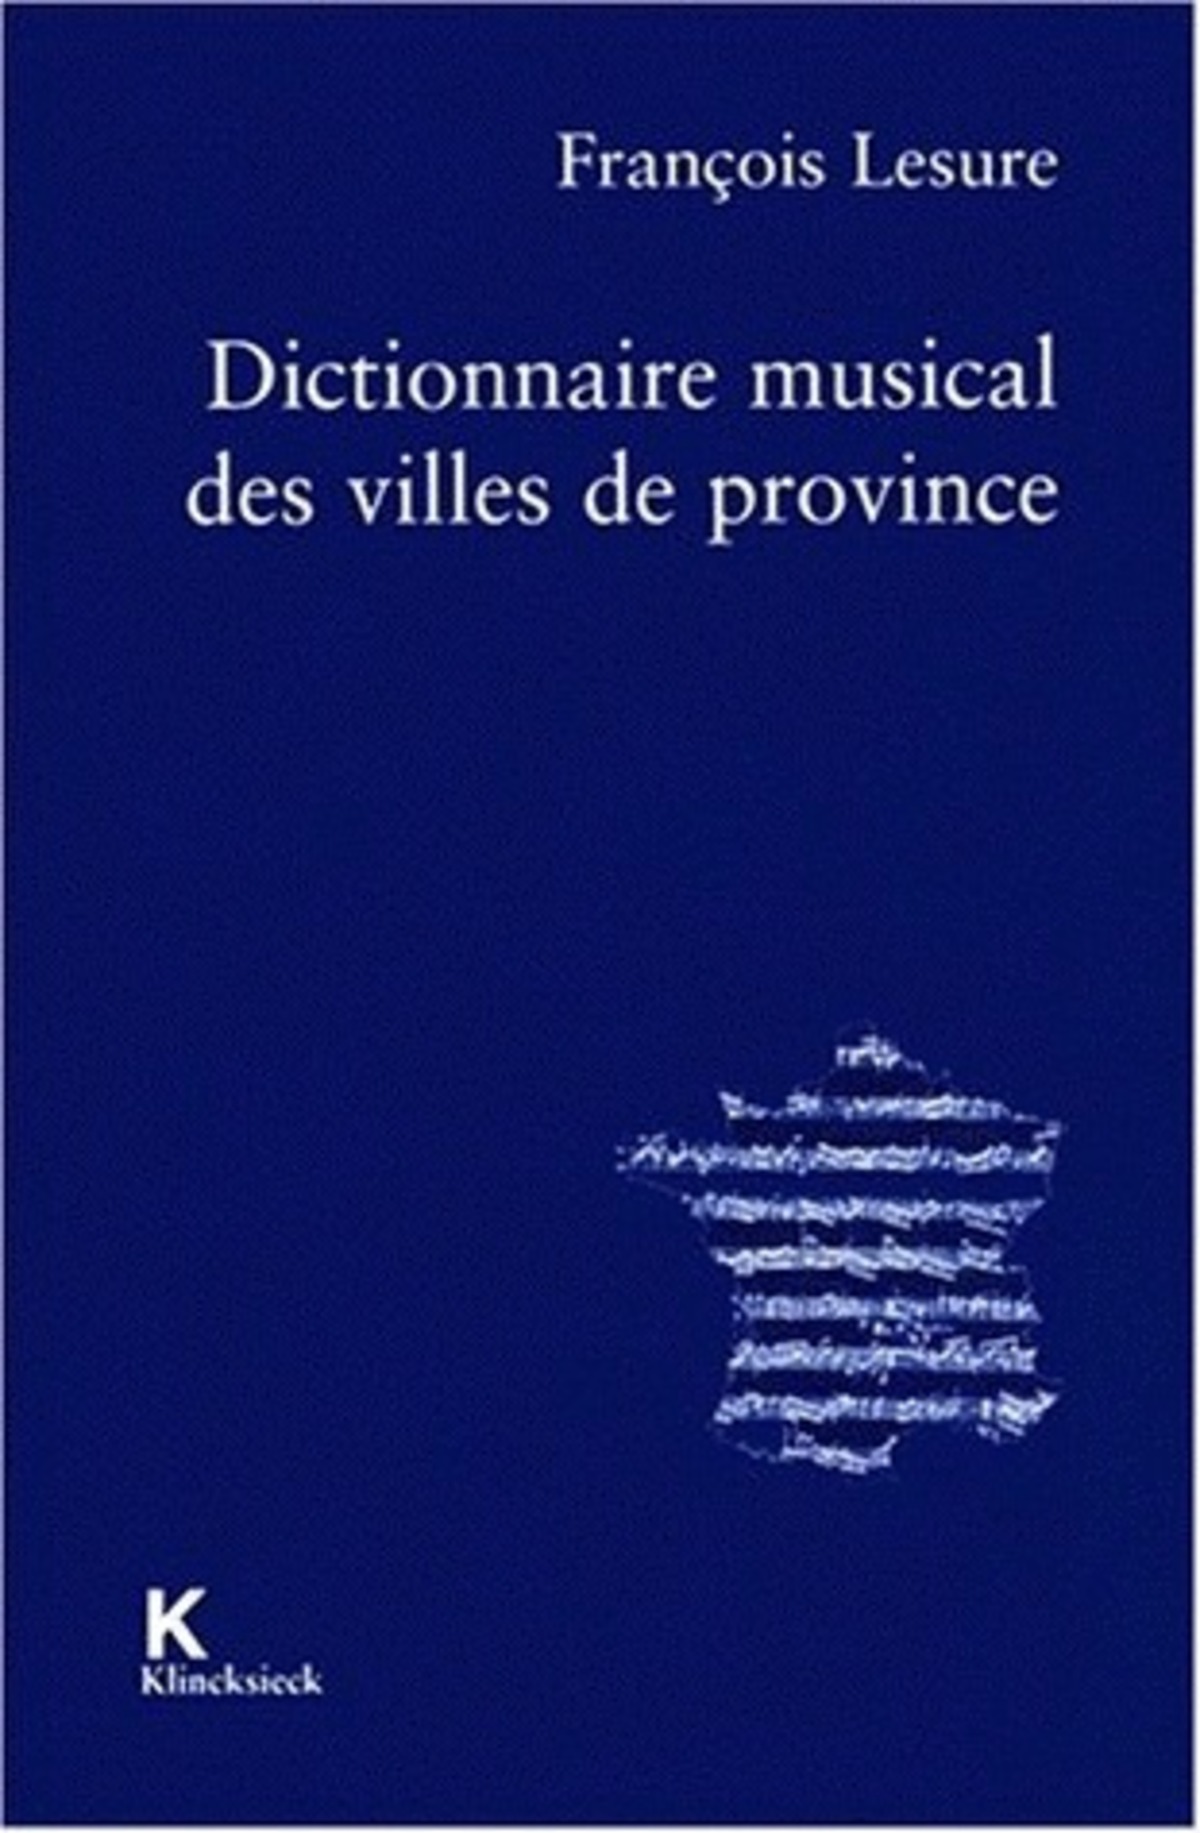 Dictionnaire musical des villes de province